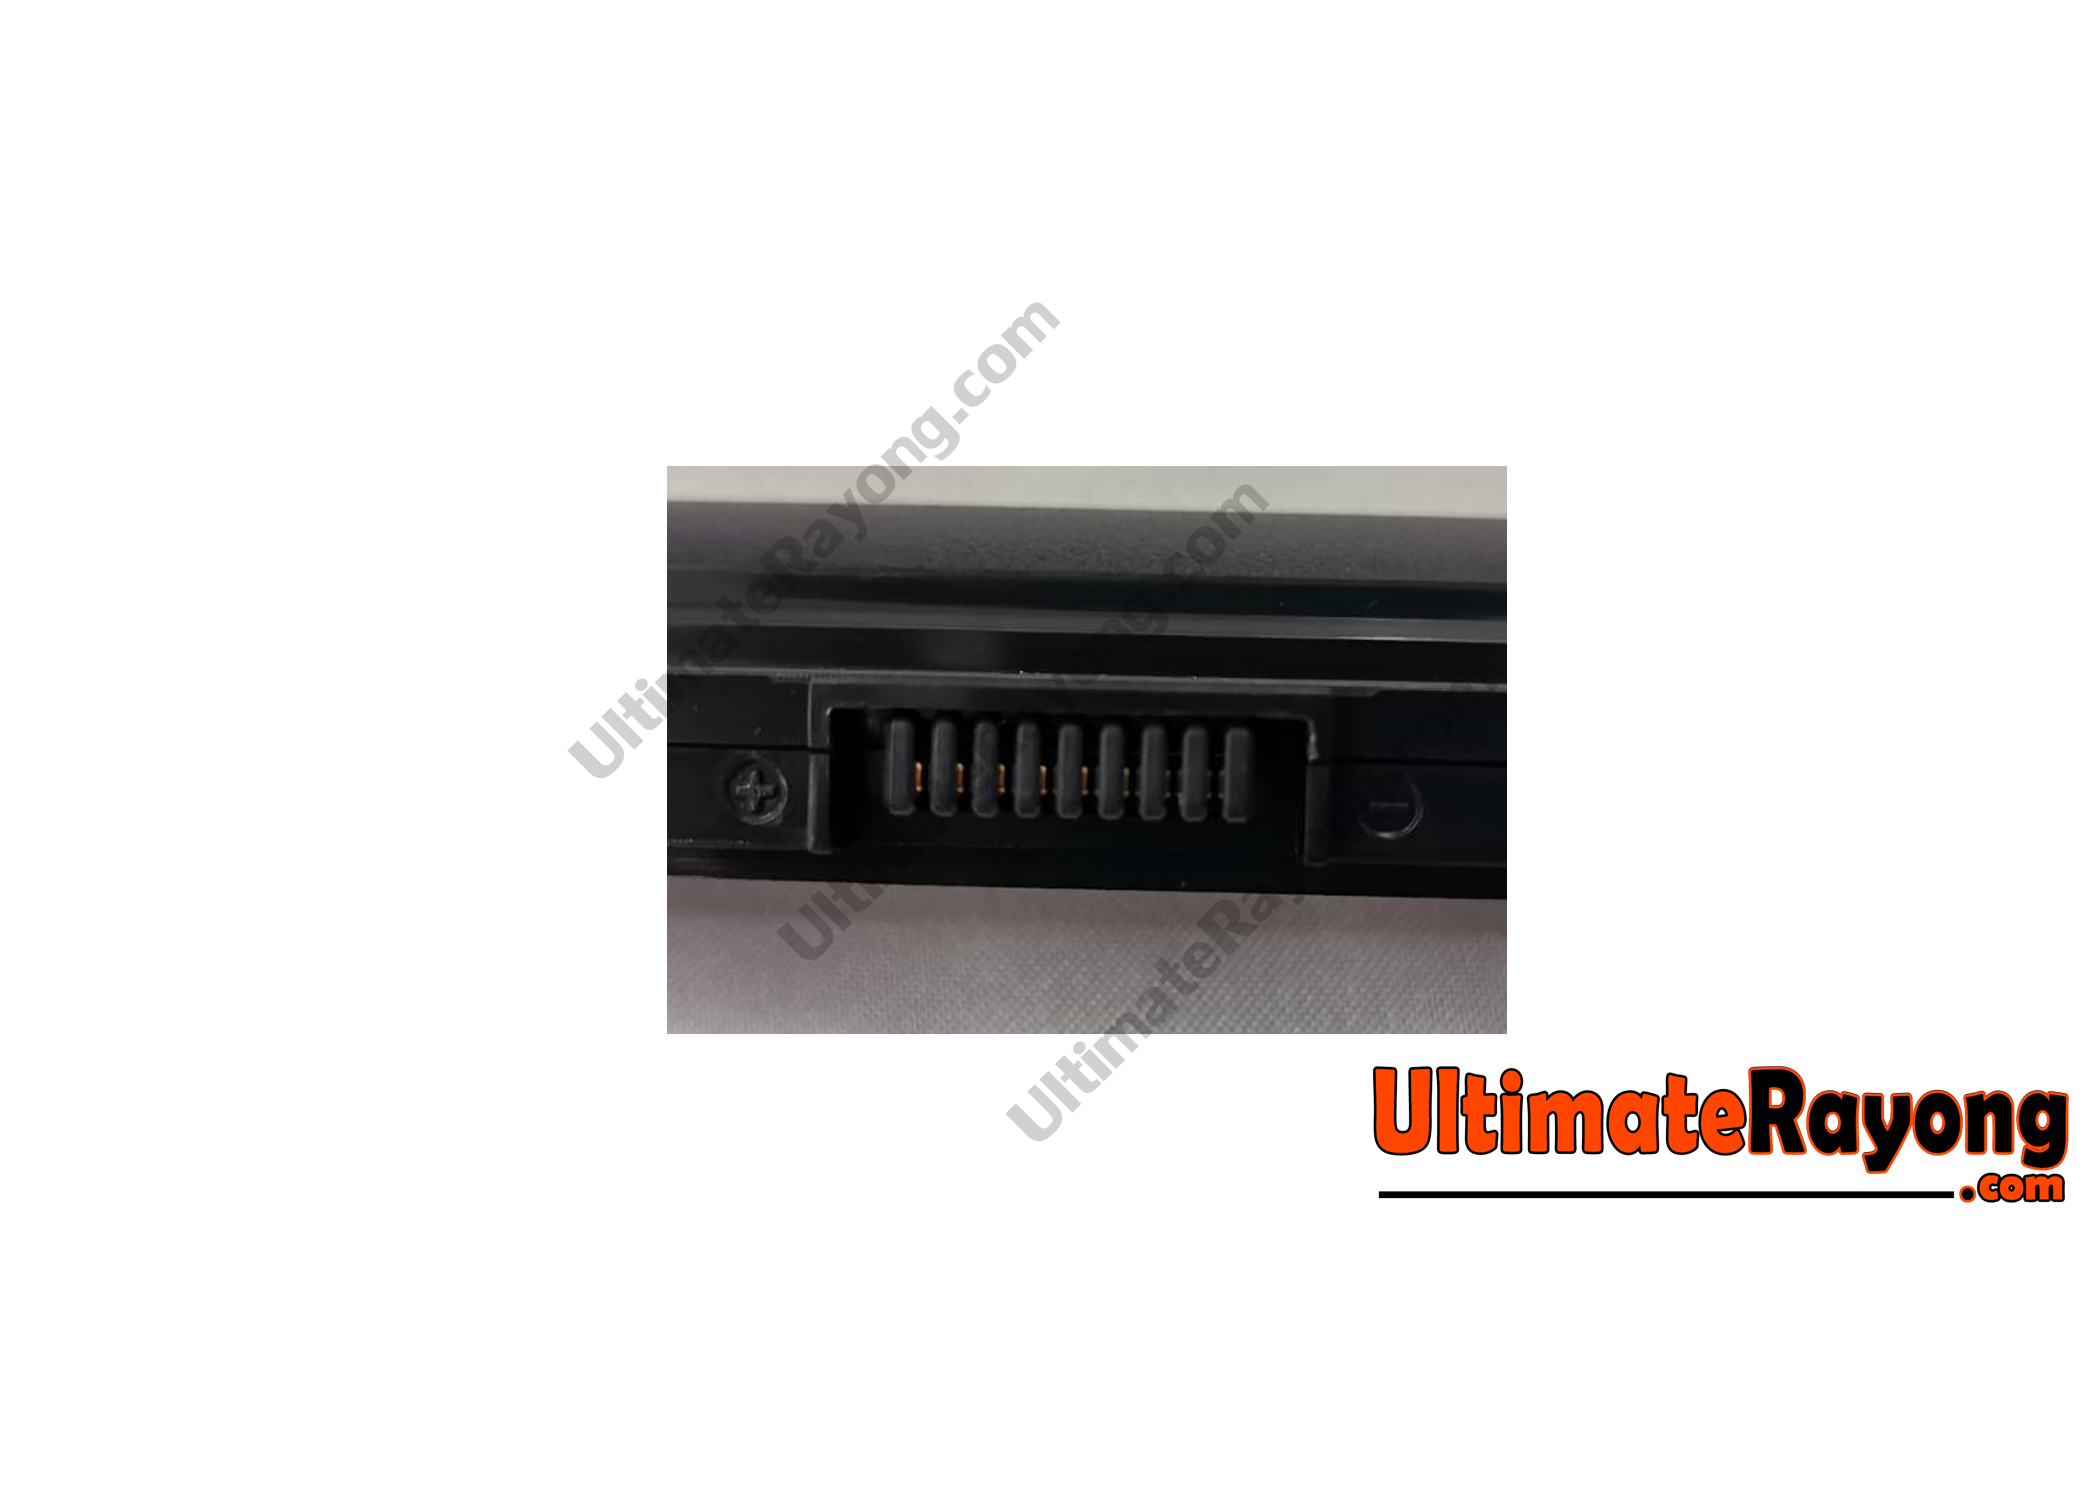 Battery HP 240 G4 Series HS04 14.8V-2200mAh Black (ORG)